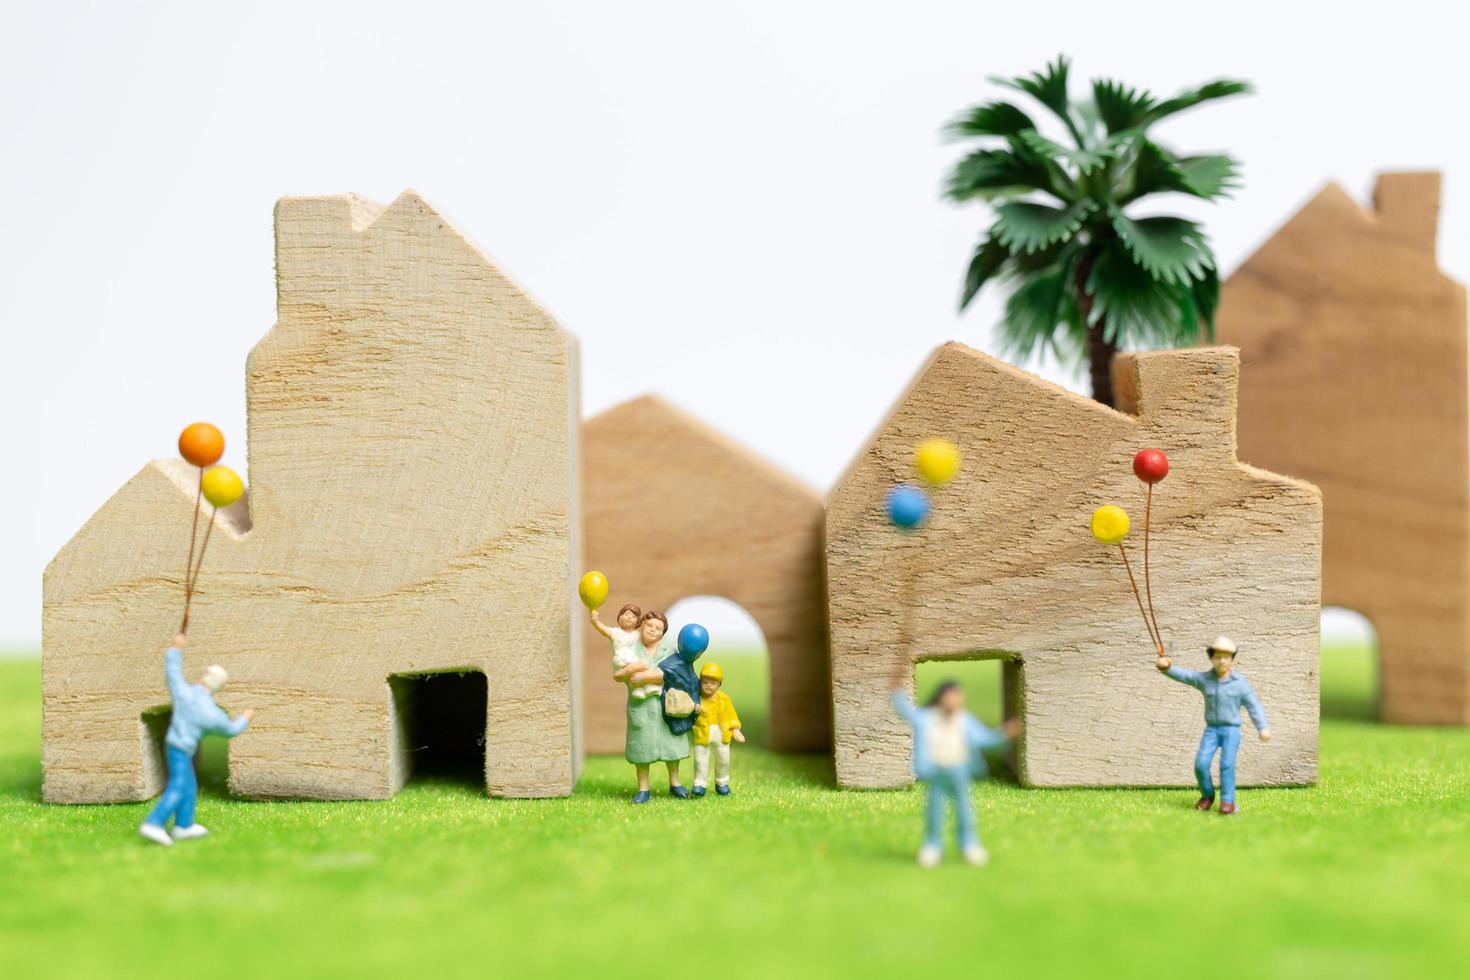 Famille miniature marchant dans un champ avec des ballons, des relations familiales heureuses et un concept de temps libre photo